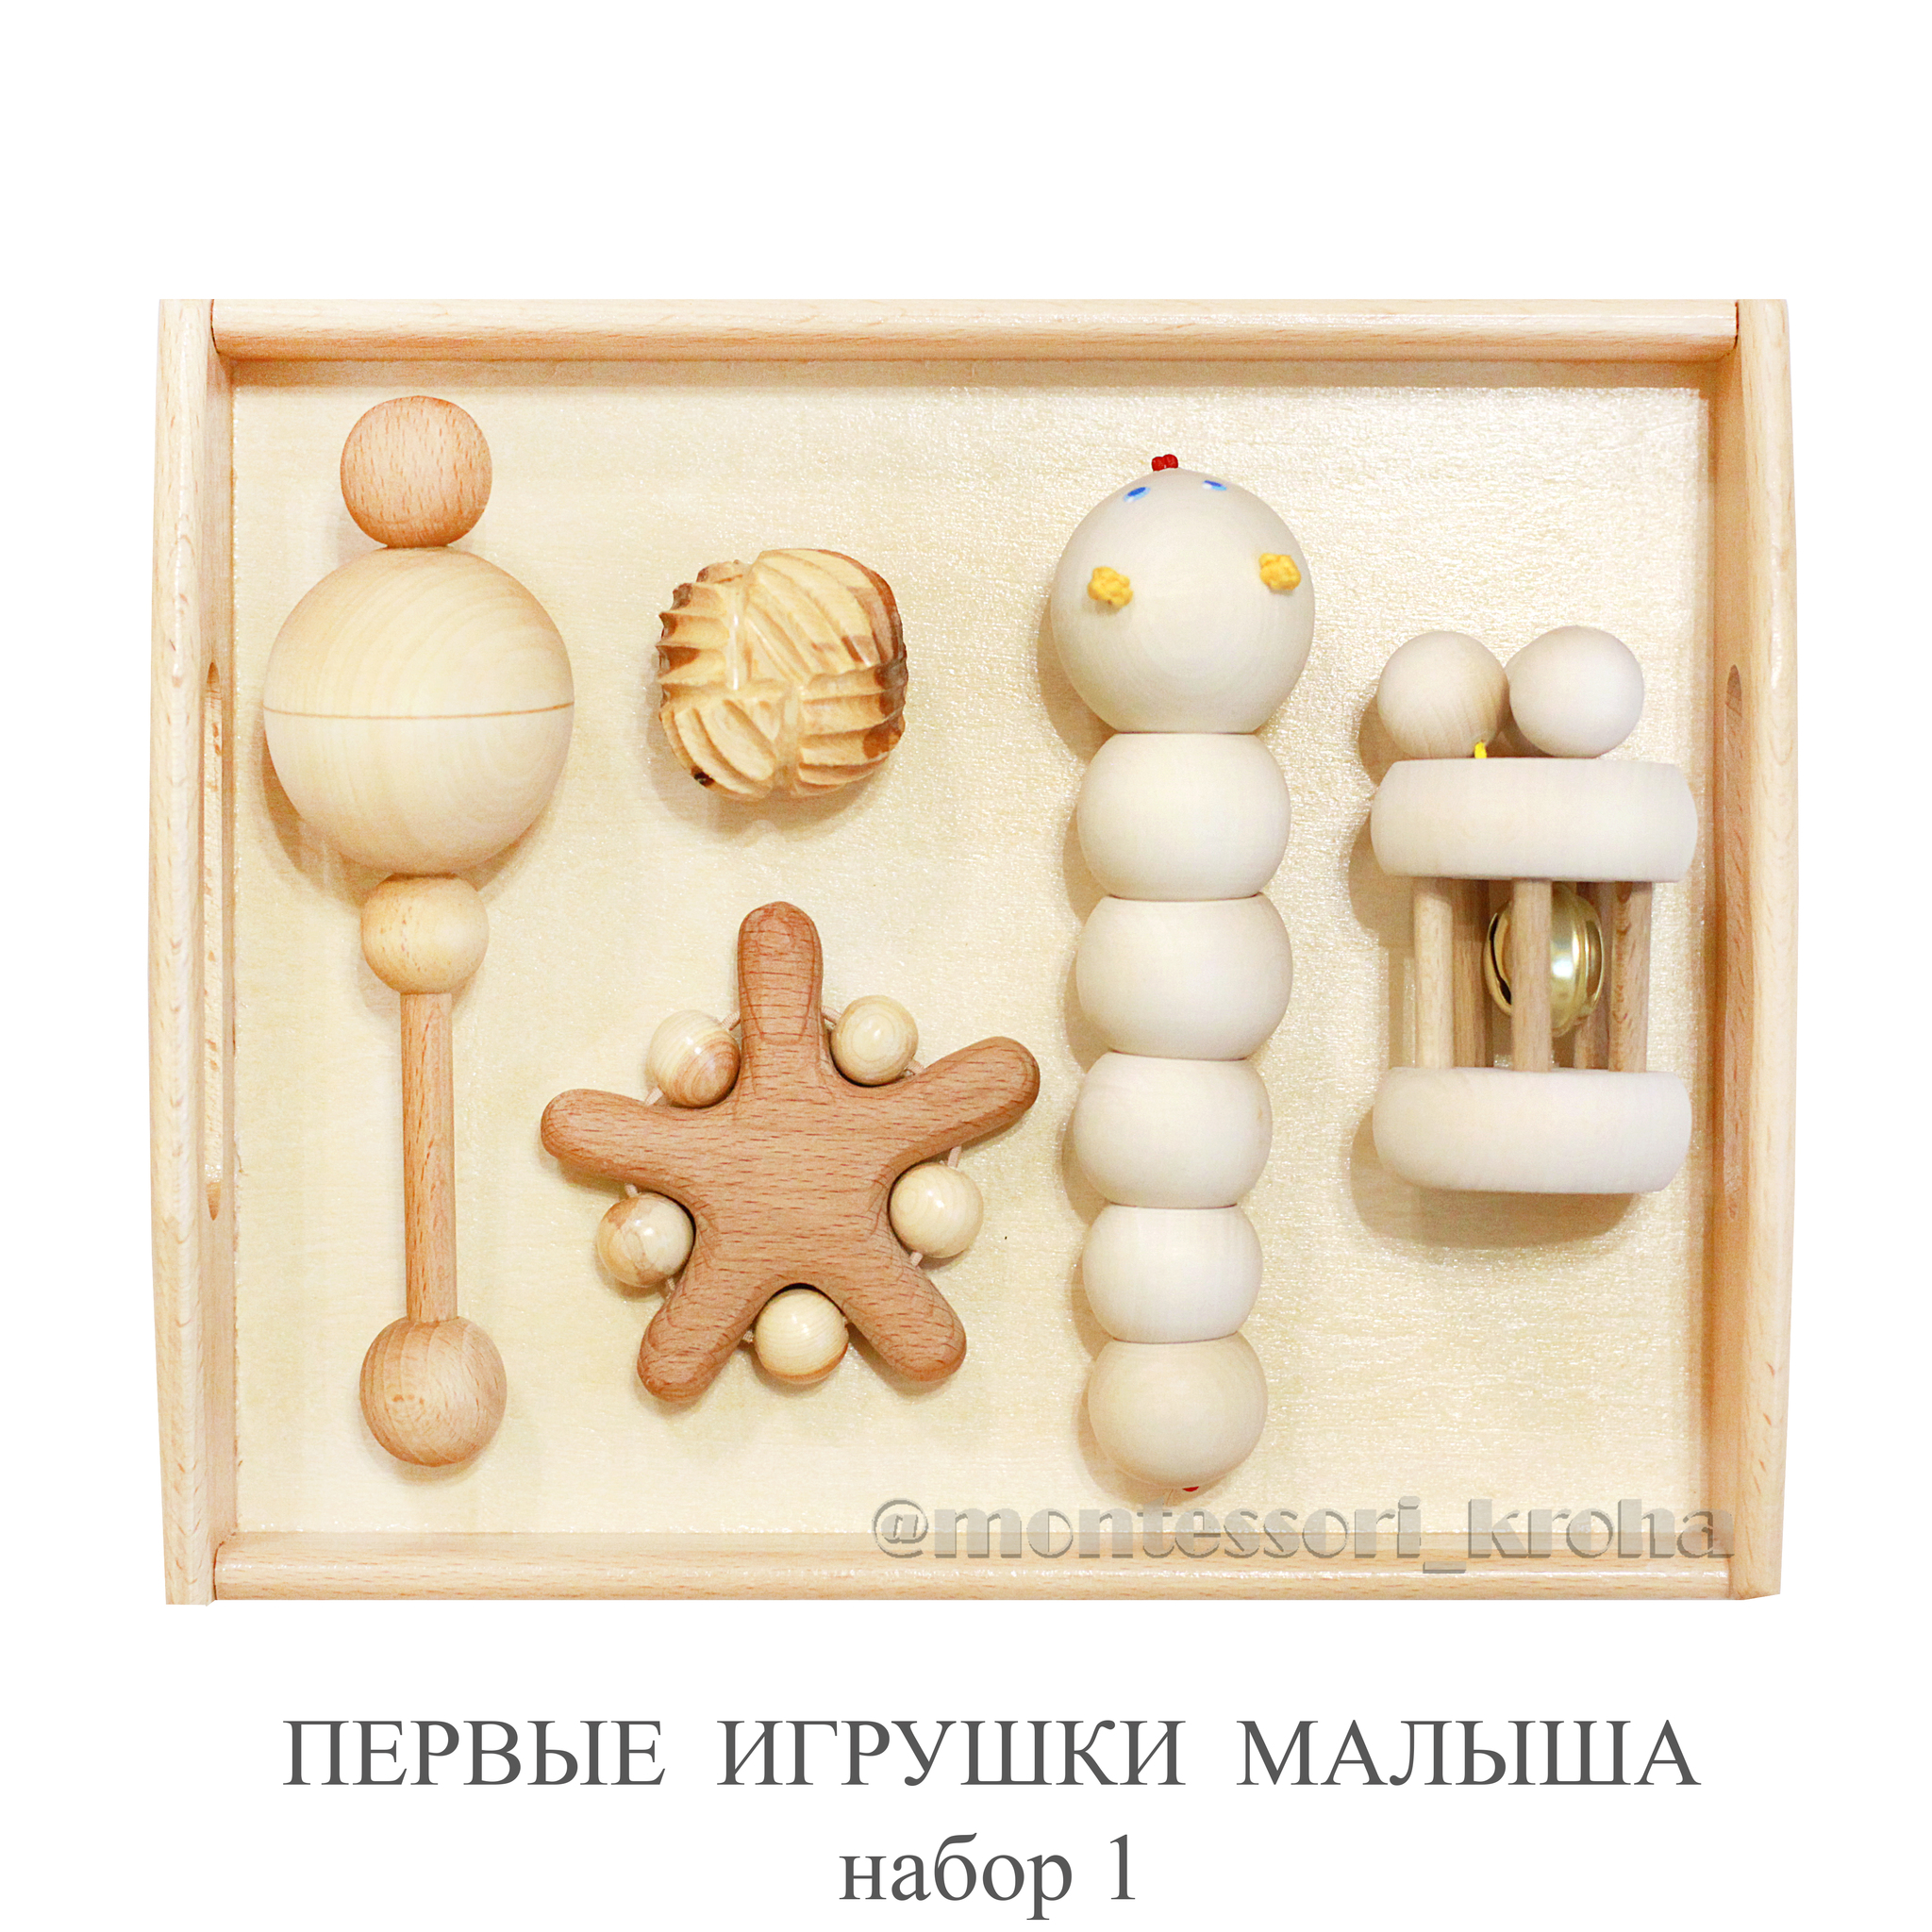 Купить книжки-игрушки в интернет магазине баштрен.рф | Страница 13